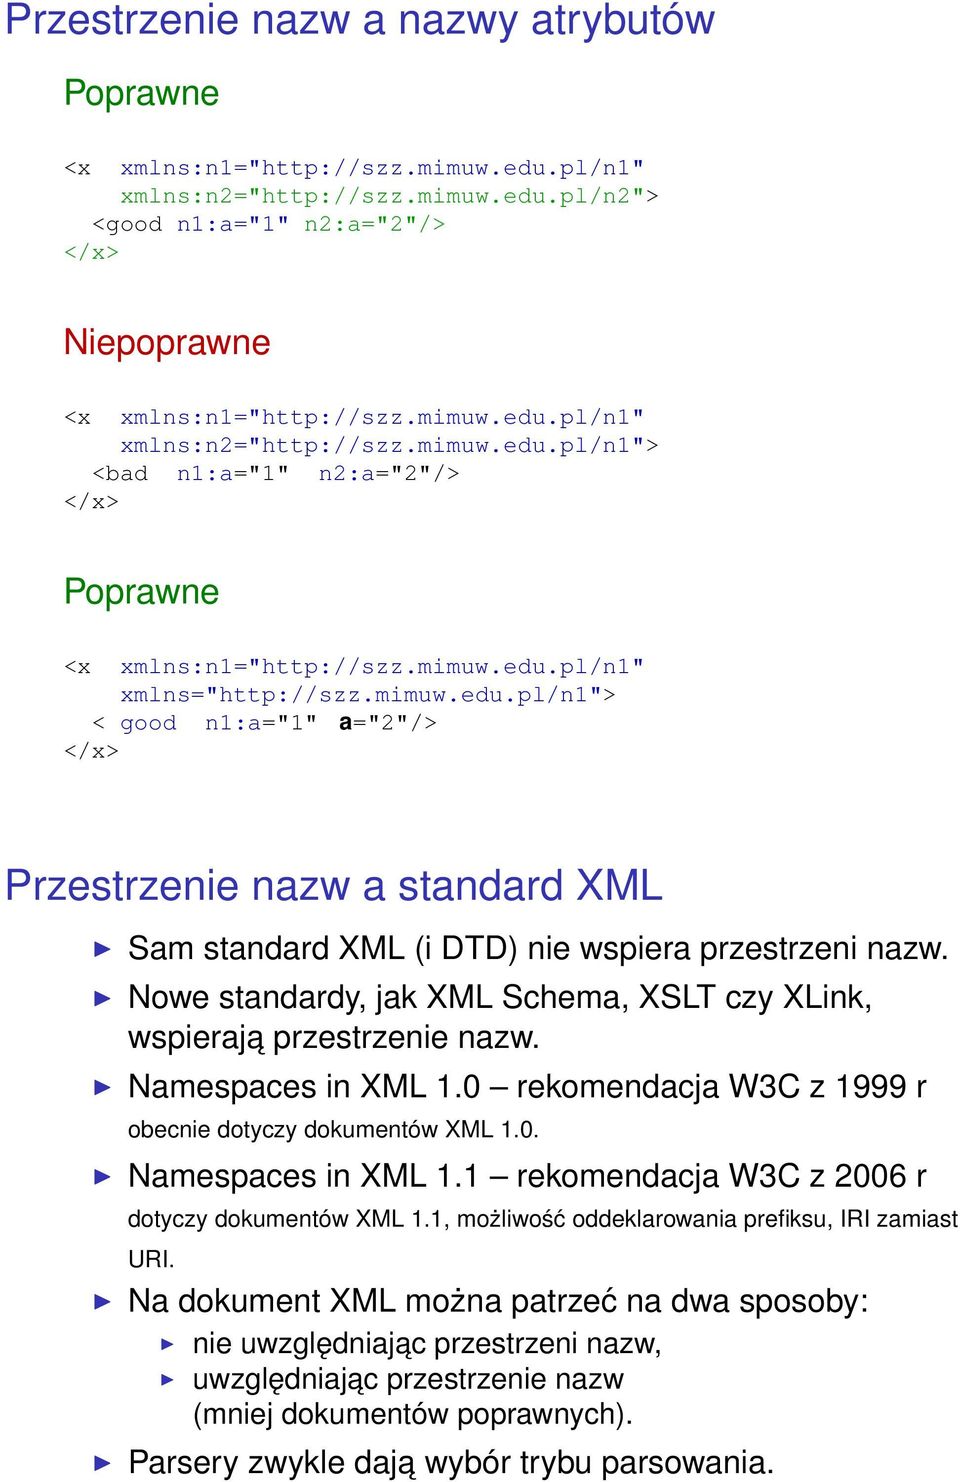 Nowe standardy, jak XML Schema, XSLT czy XLink, wspieraja przestrzenie nazw. Namespaces in XML 1.0 rekomendacja W3C z 1999 r obecnie dotyczy dokumentów XML 1.0. Namespaces in XML 1.1 rekomendacja W3C z 2006 r dotyczy dokumentów XML 1.